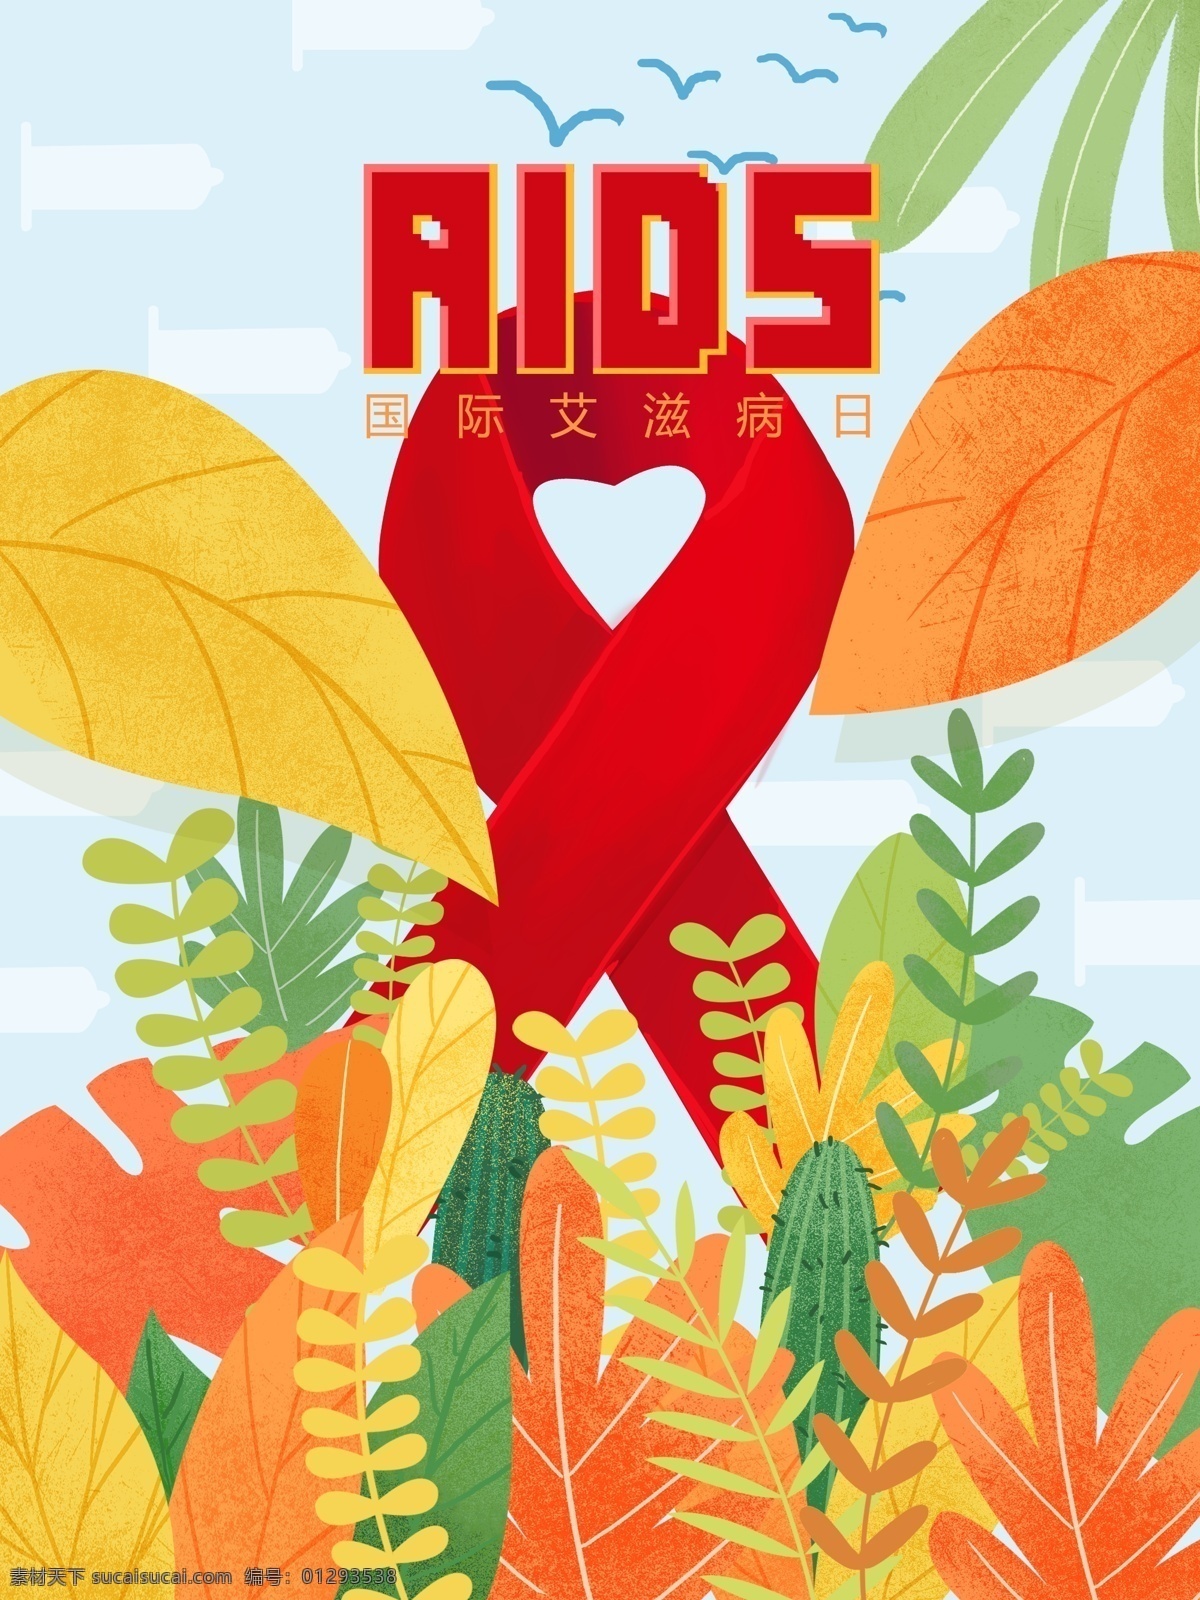 国际 艾滋病 日 插画 艾滋病图标 植物 桃心 关爱 国际艾滋病日 宣传配图 手机媒介配图